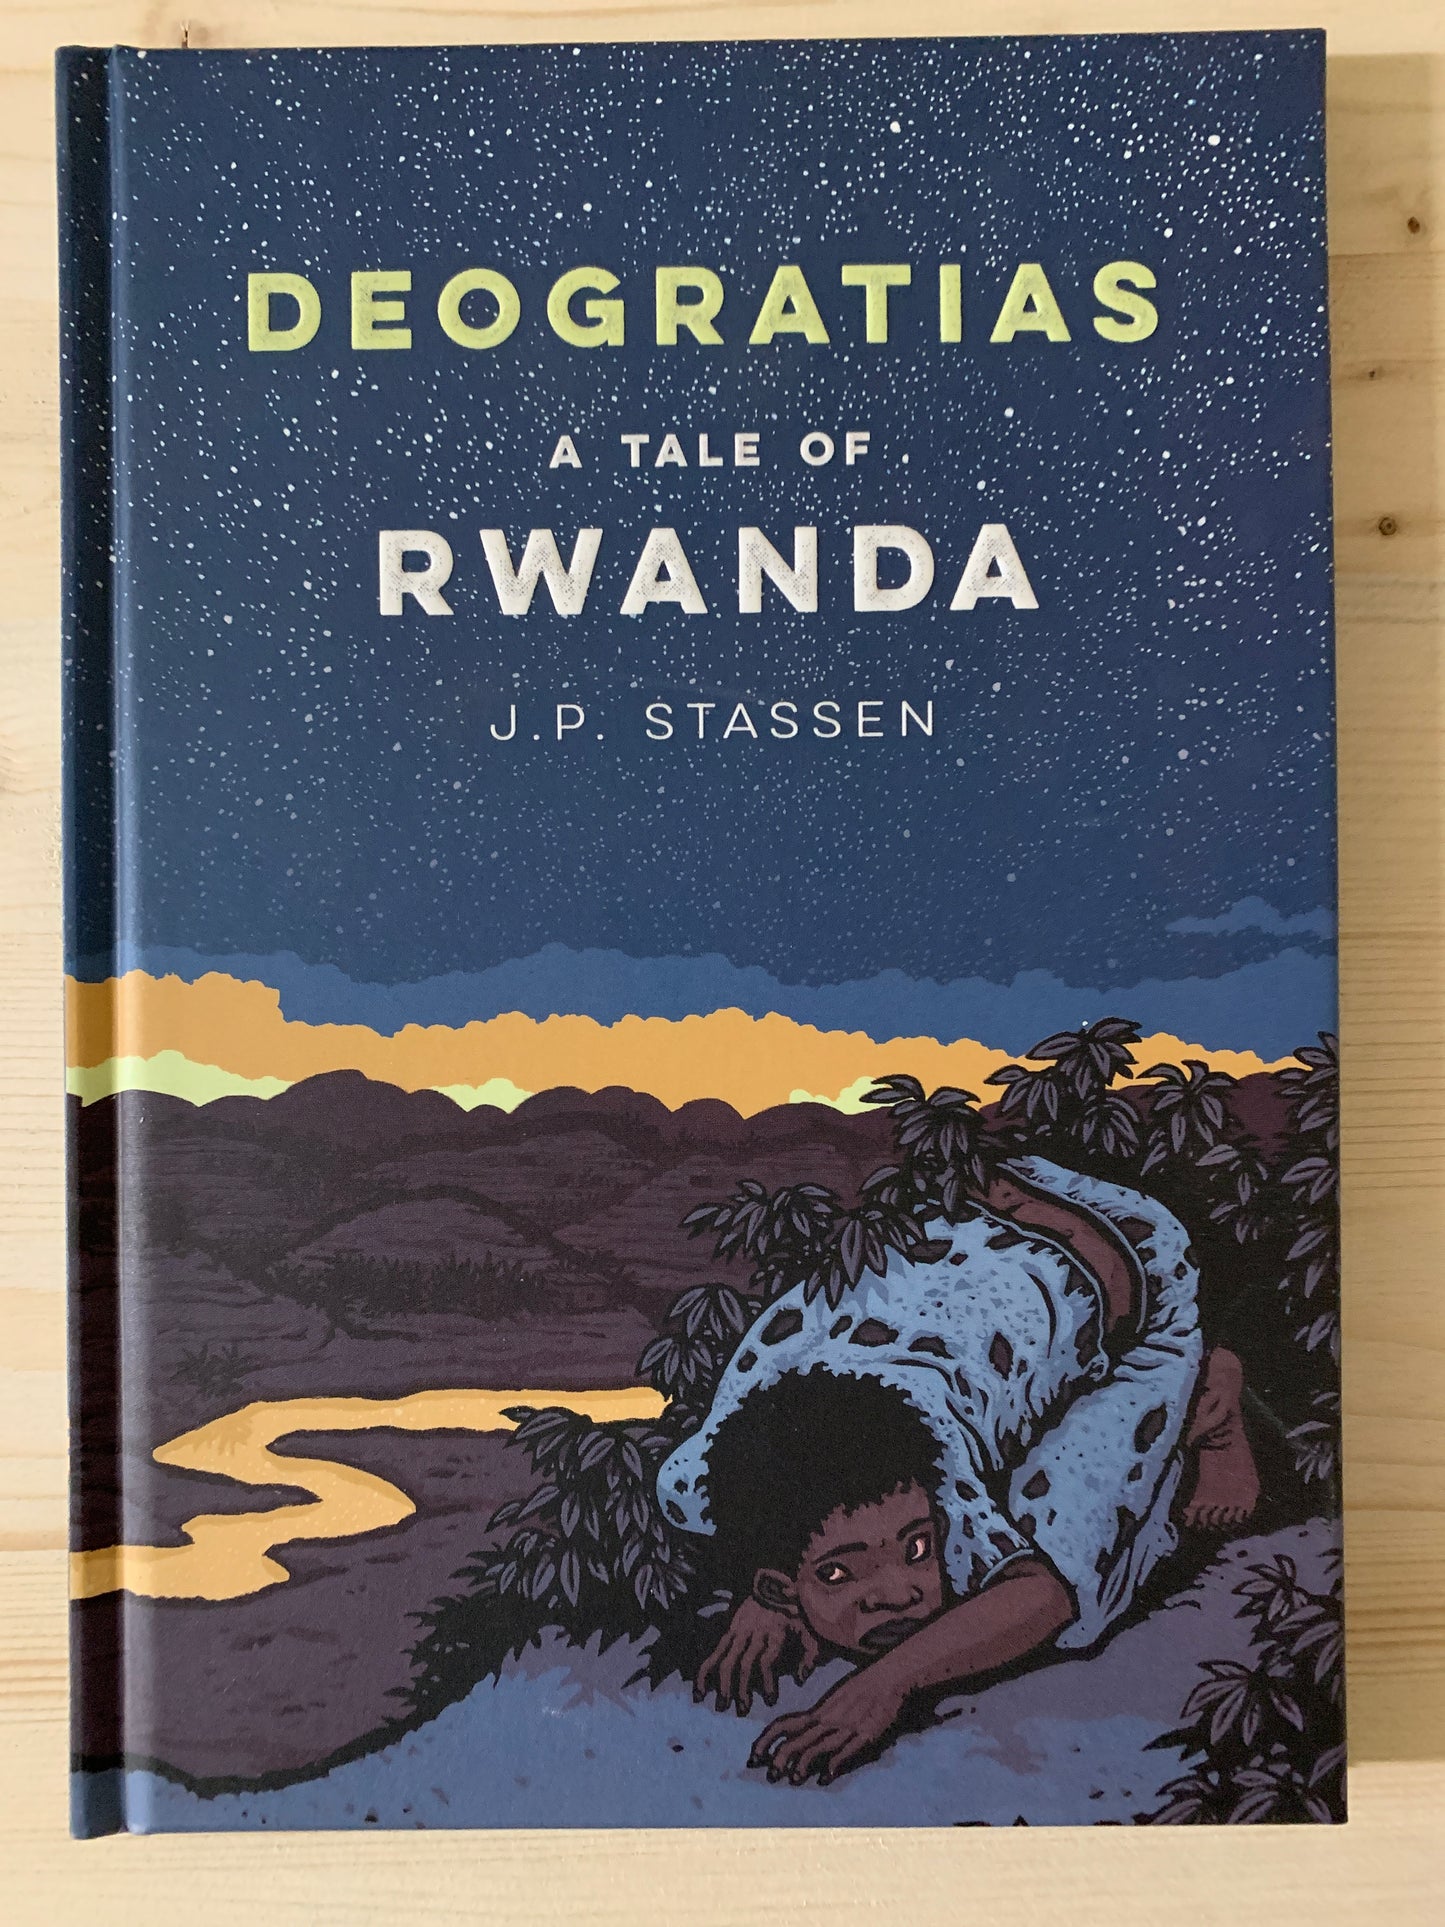 Deogratias: A Tale of Rwanda